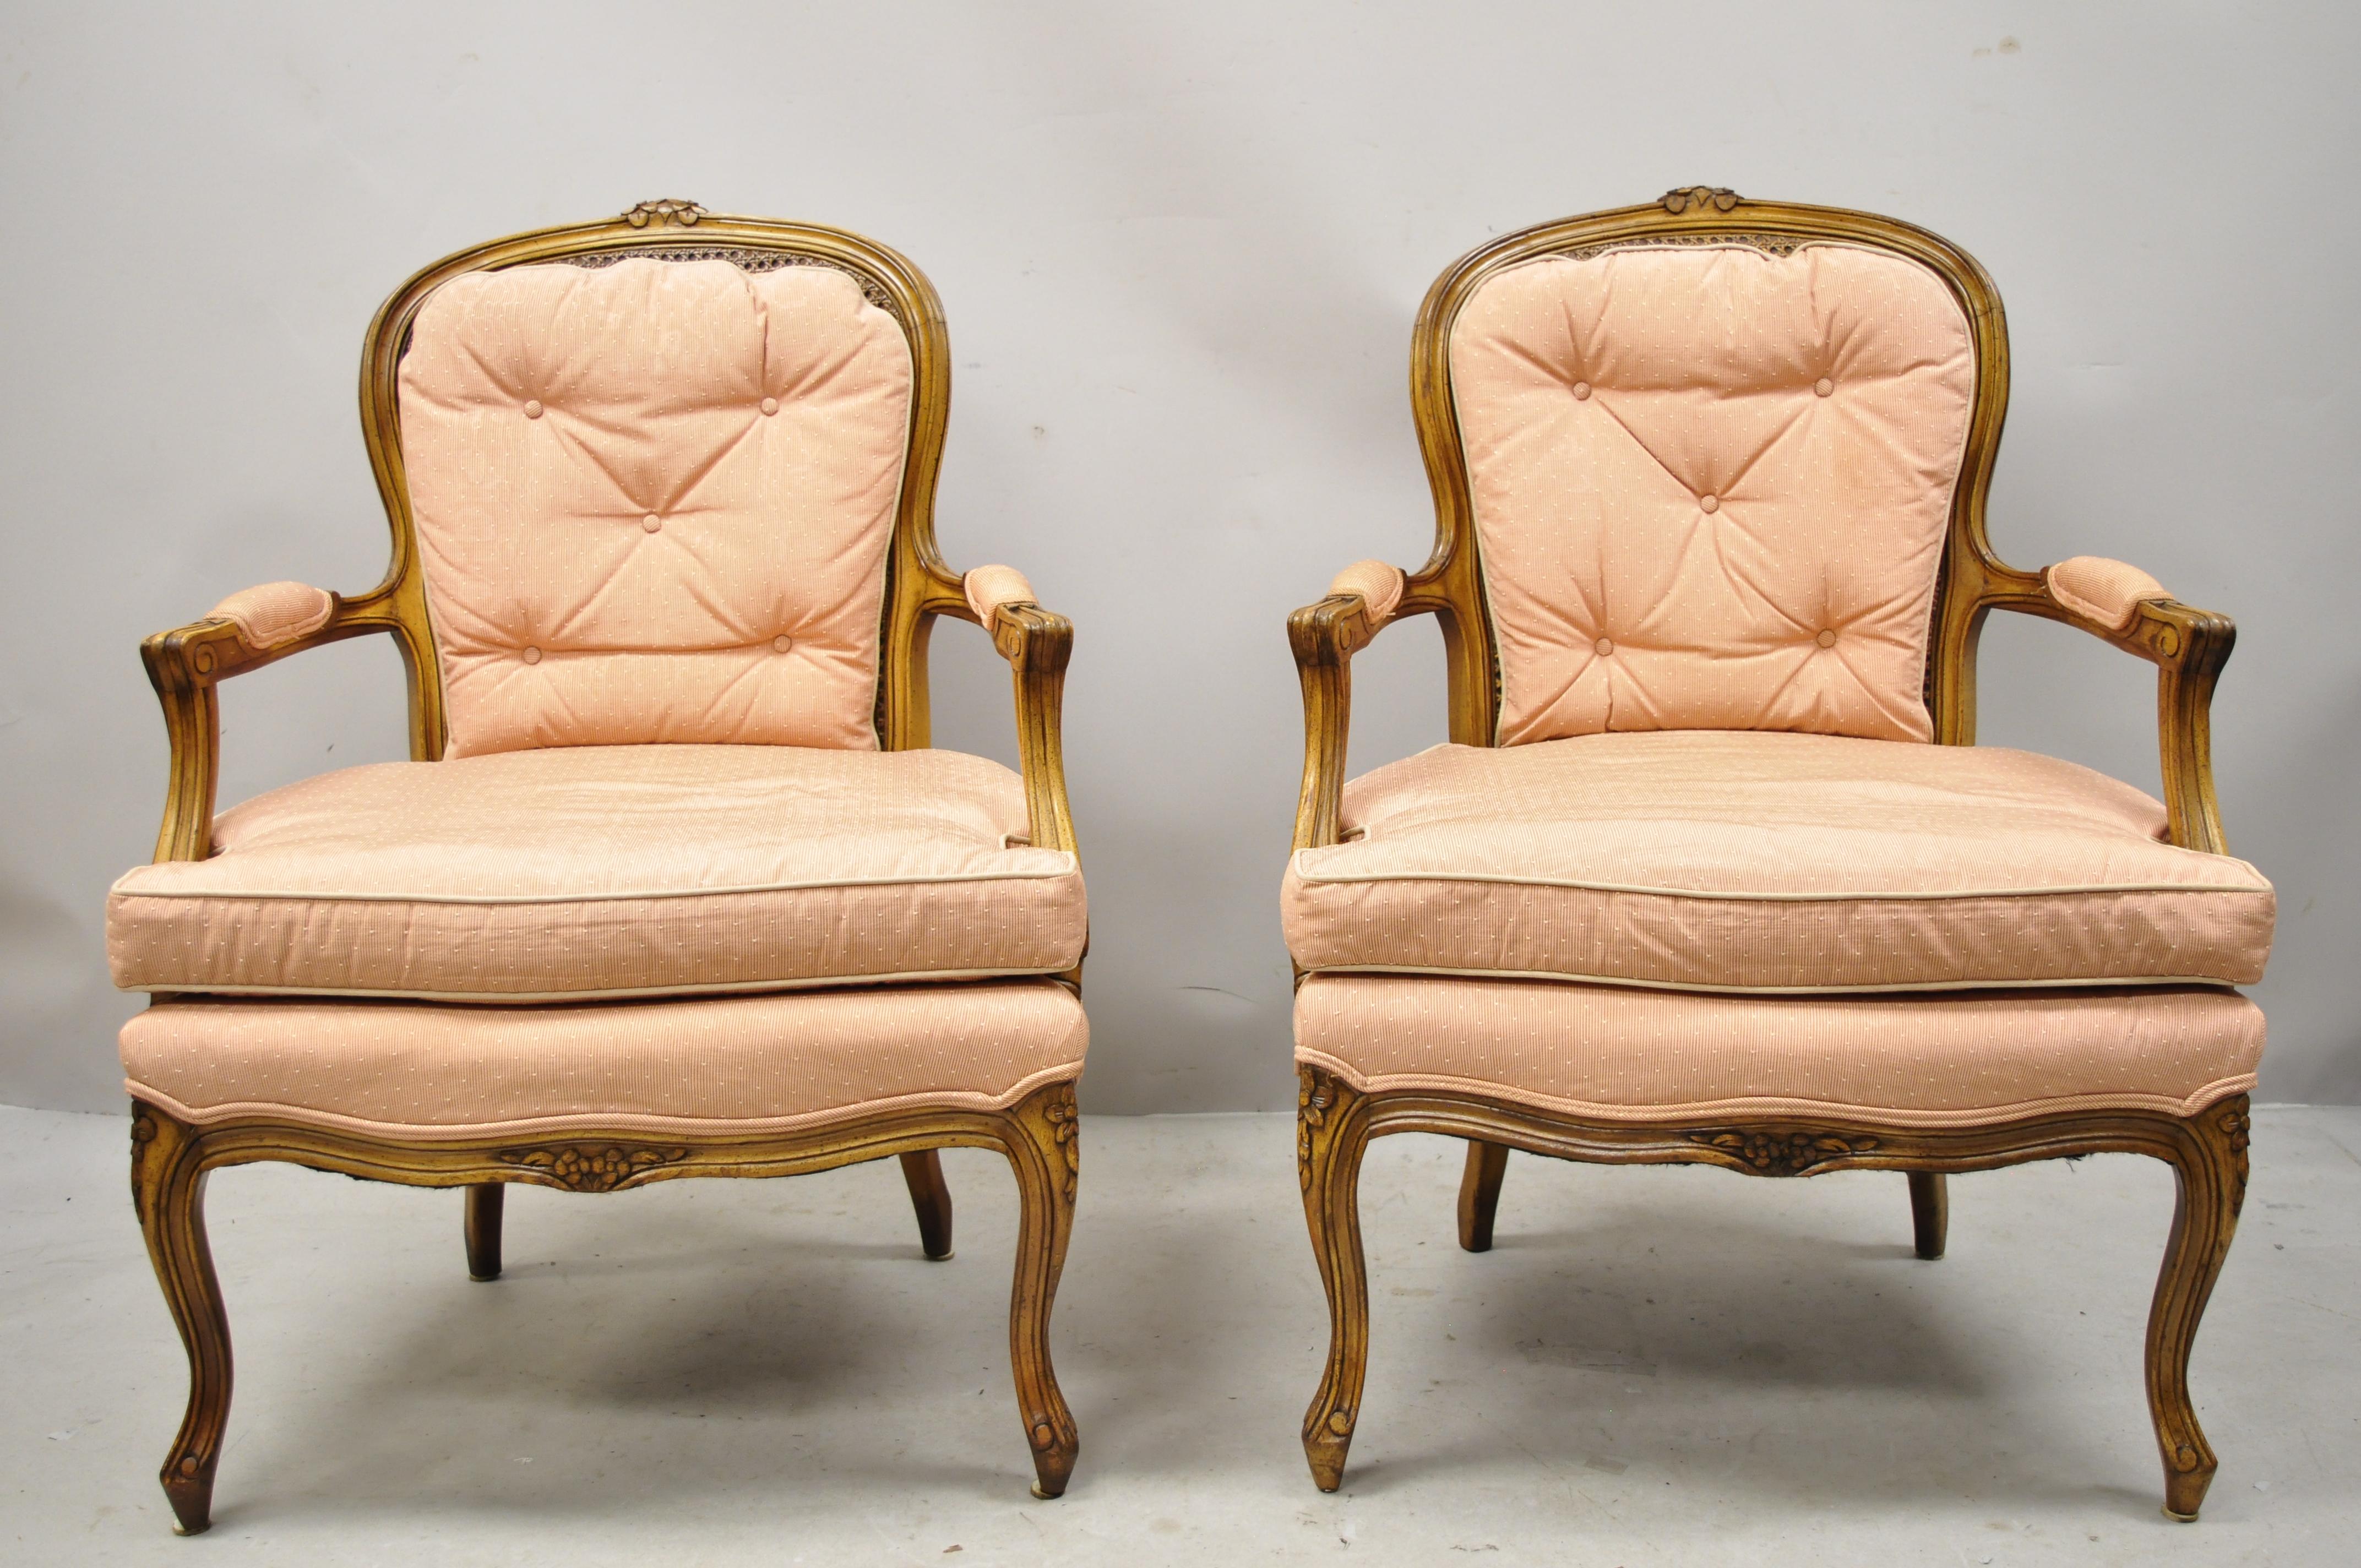 Französische Sessel im Louis-XV-Provincial-Stil mit geschnitzter Nussbaum-Rückenlehne - ein Paar. Artikel verfügt über Rohrrücken, Massivholzrahmen, gepolsterte Armlehnen, schön geschnitzte Details, Cabriole Beine, sehr schöne Vintage-Artikel,